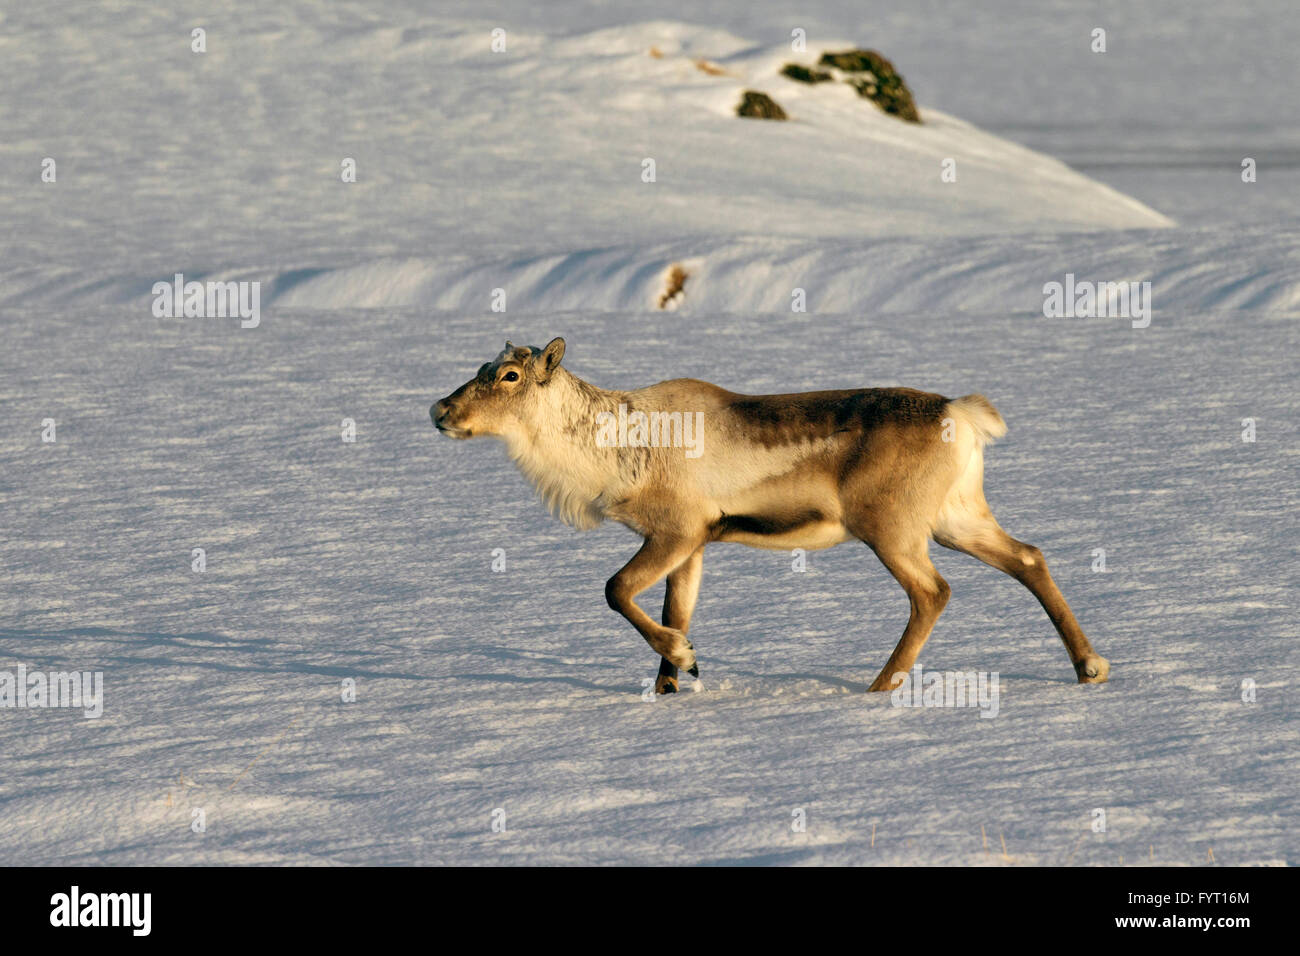 Le renne (Rangifer tarandus) sans panache de nourriture dans la neige paysage d'hiver, l'Islande Banque D'Images